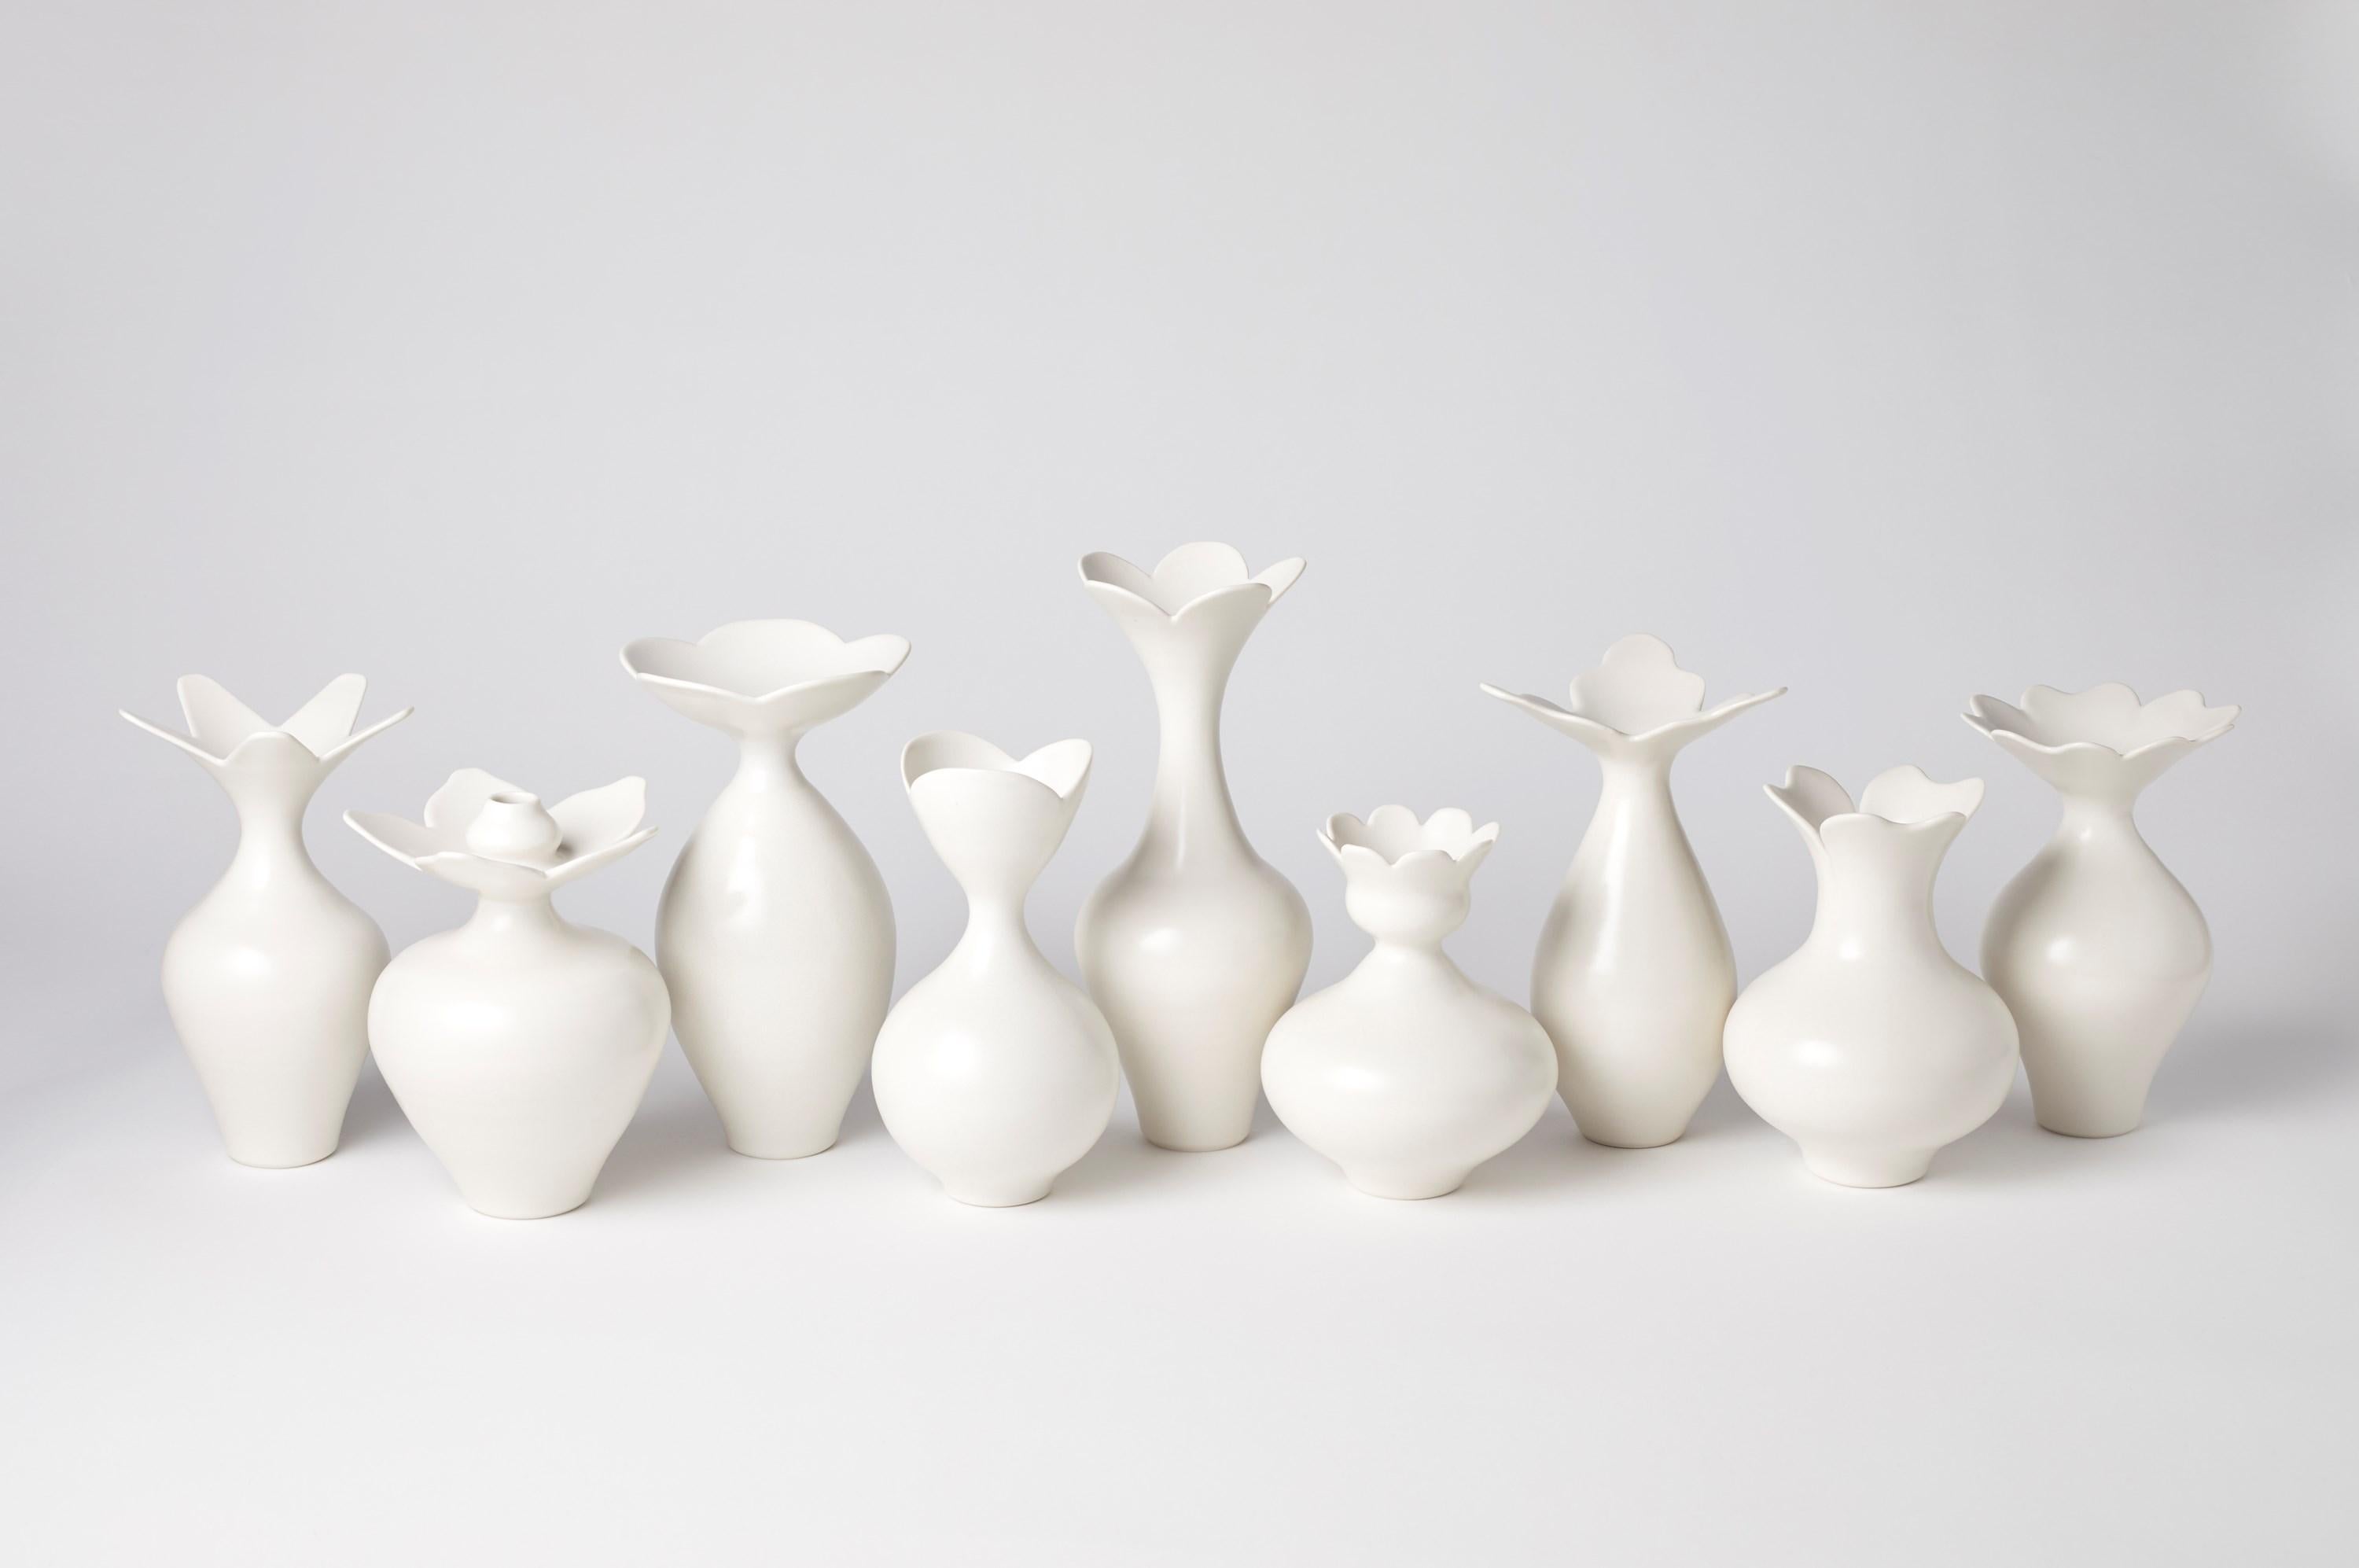 British Vase with Three Petal Rim, a Unique White Porcelain Vase by Vivienne Foley